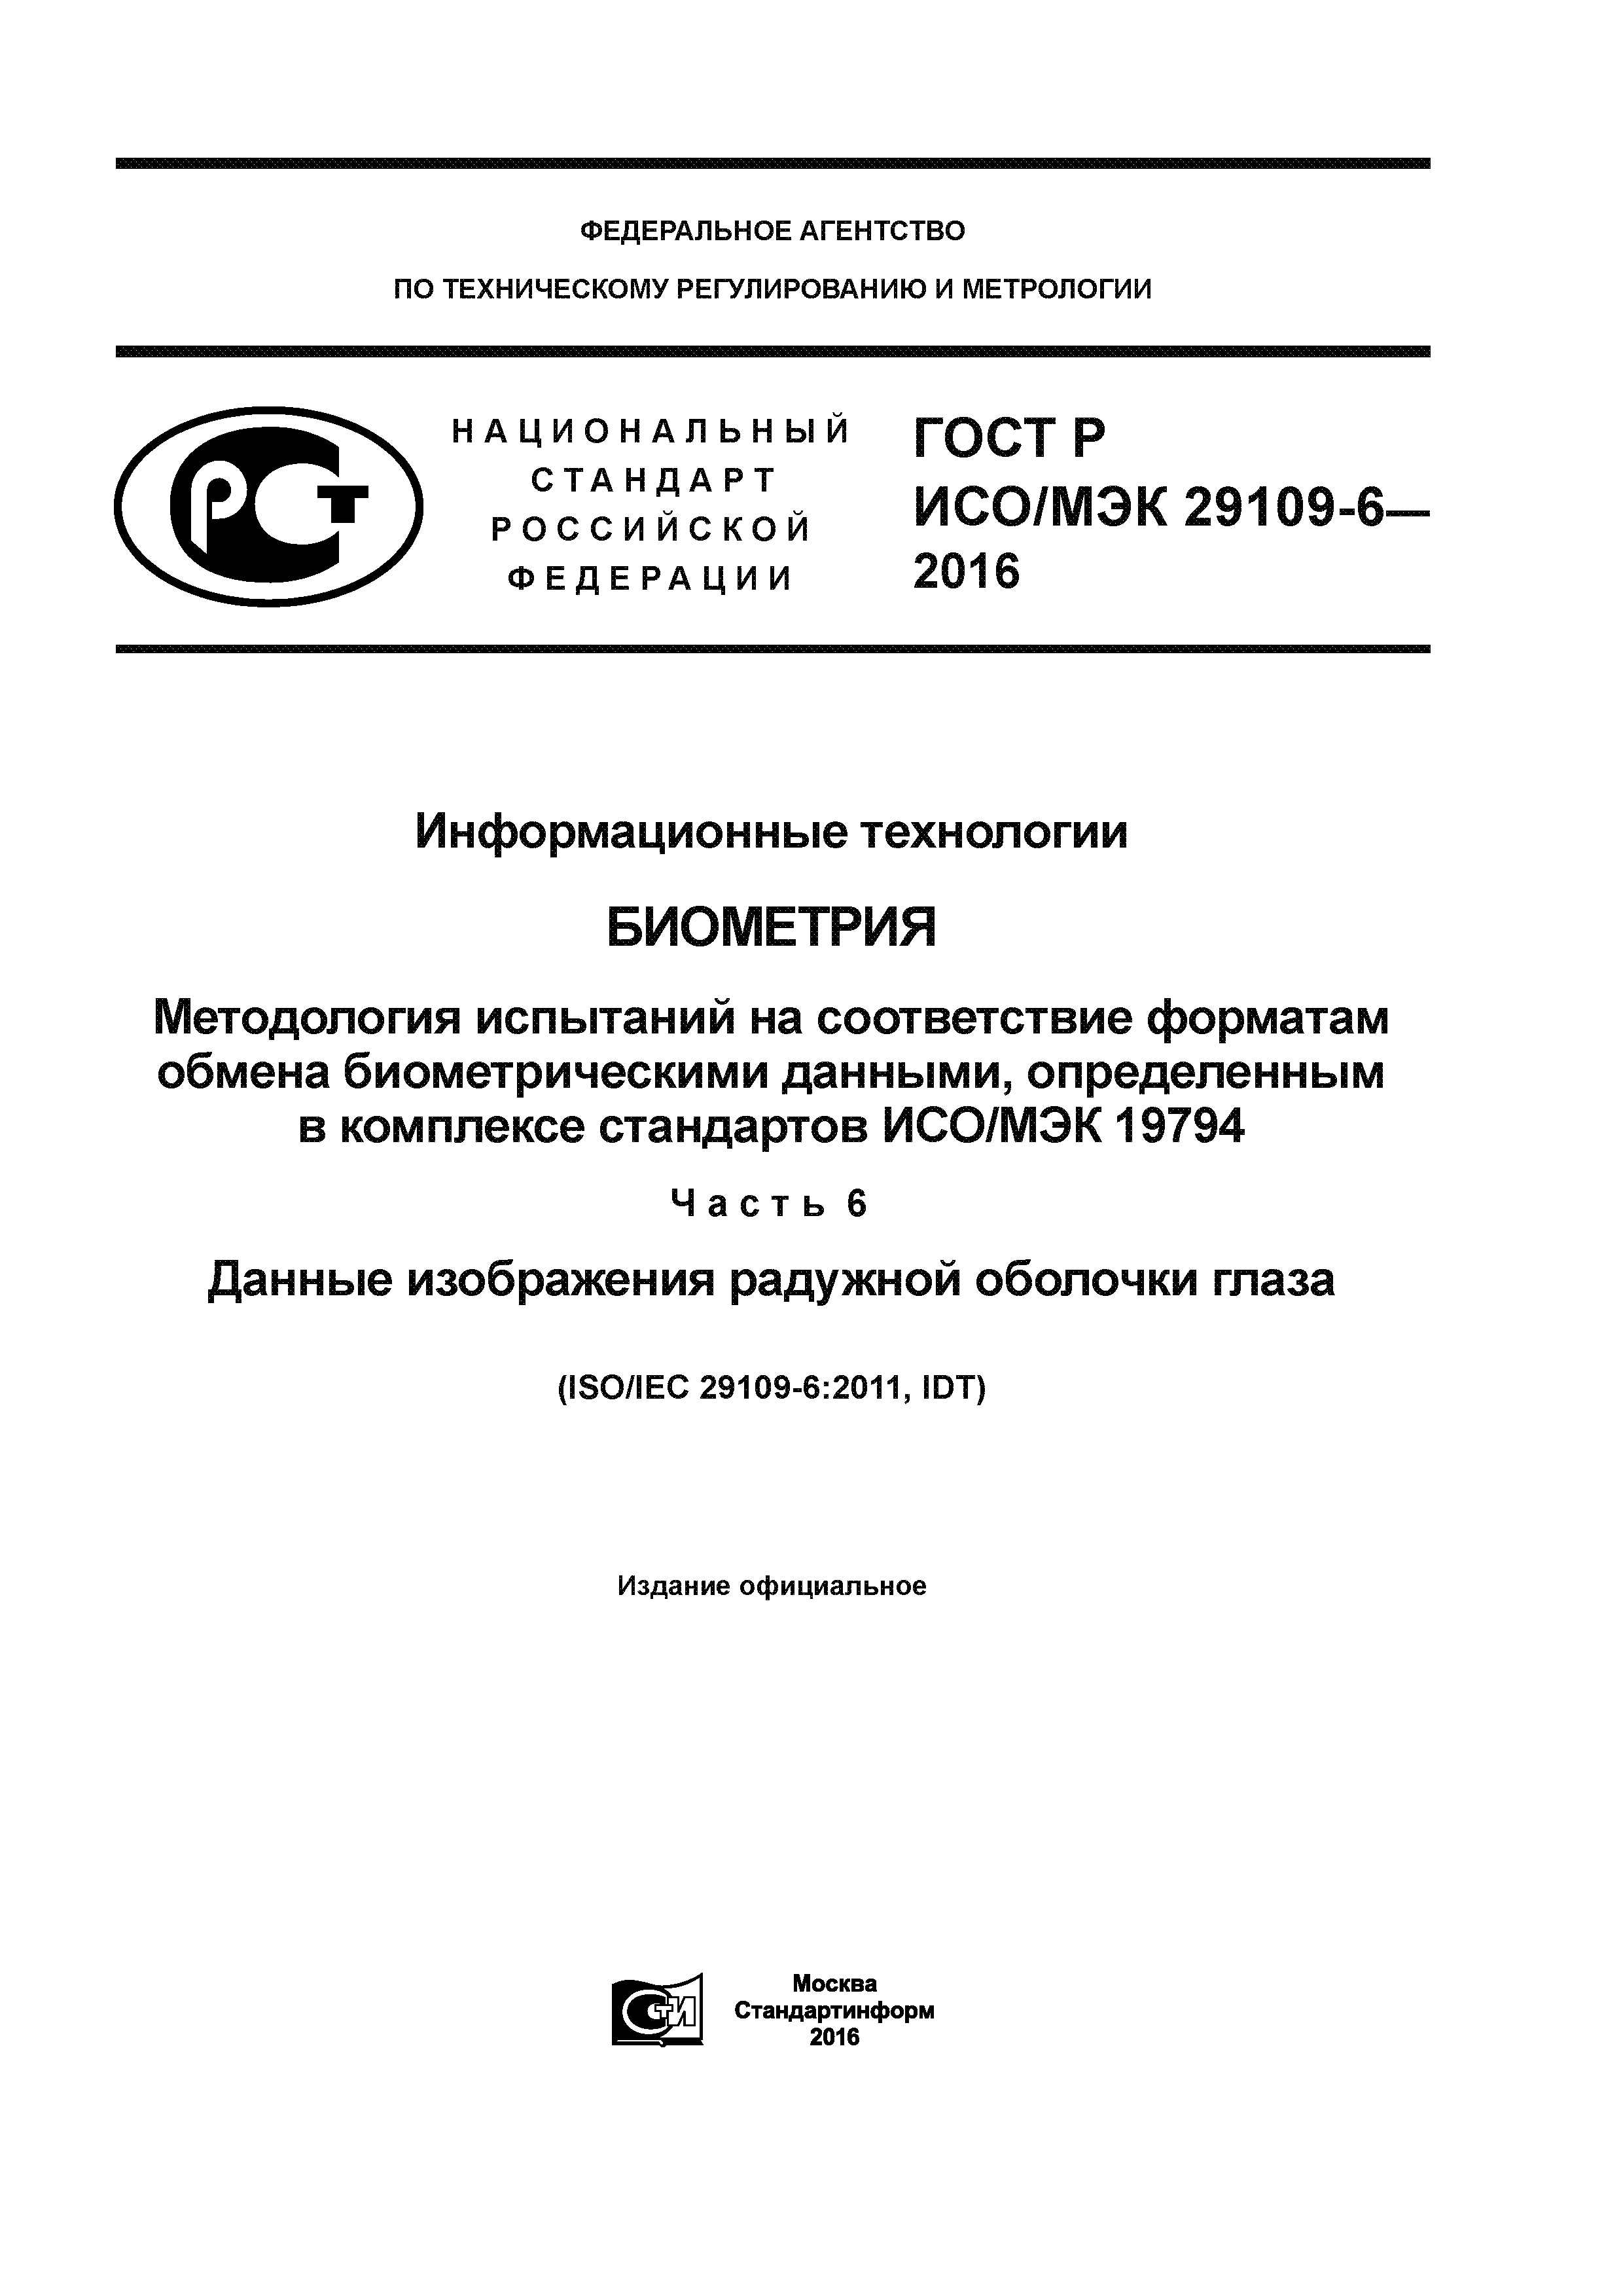 ГОСТ Р ИСО/МЭК 29109-6-2016